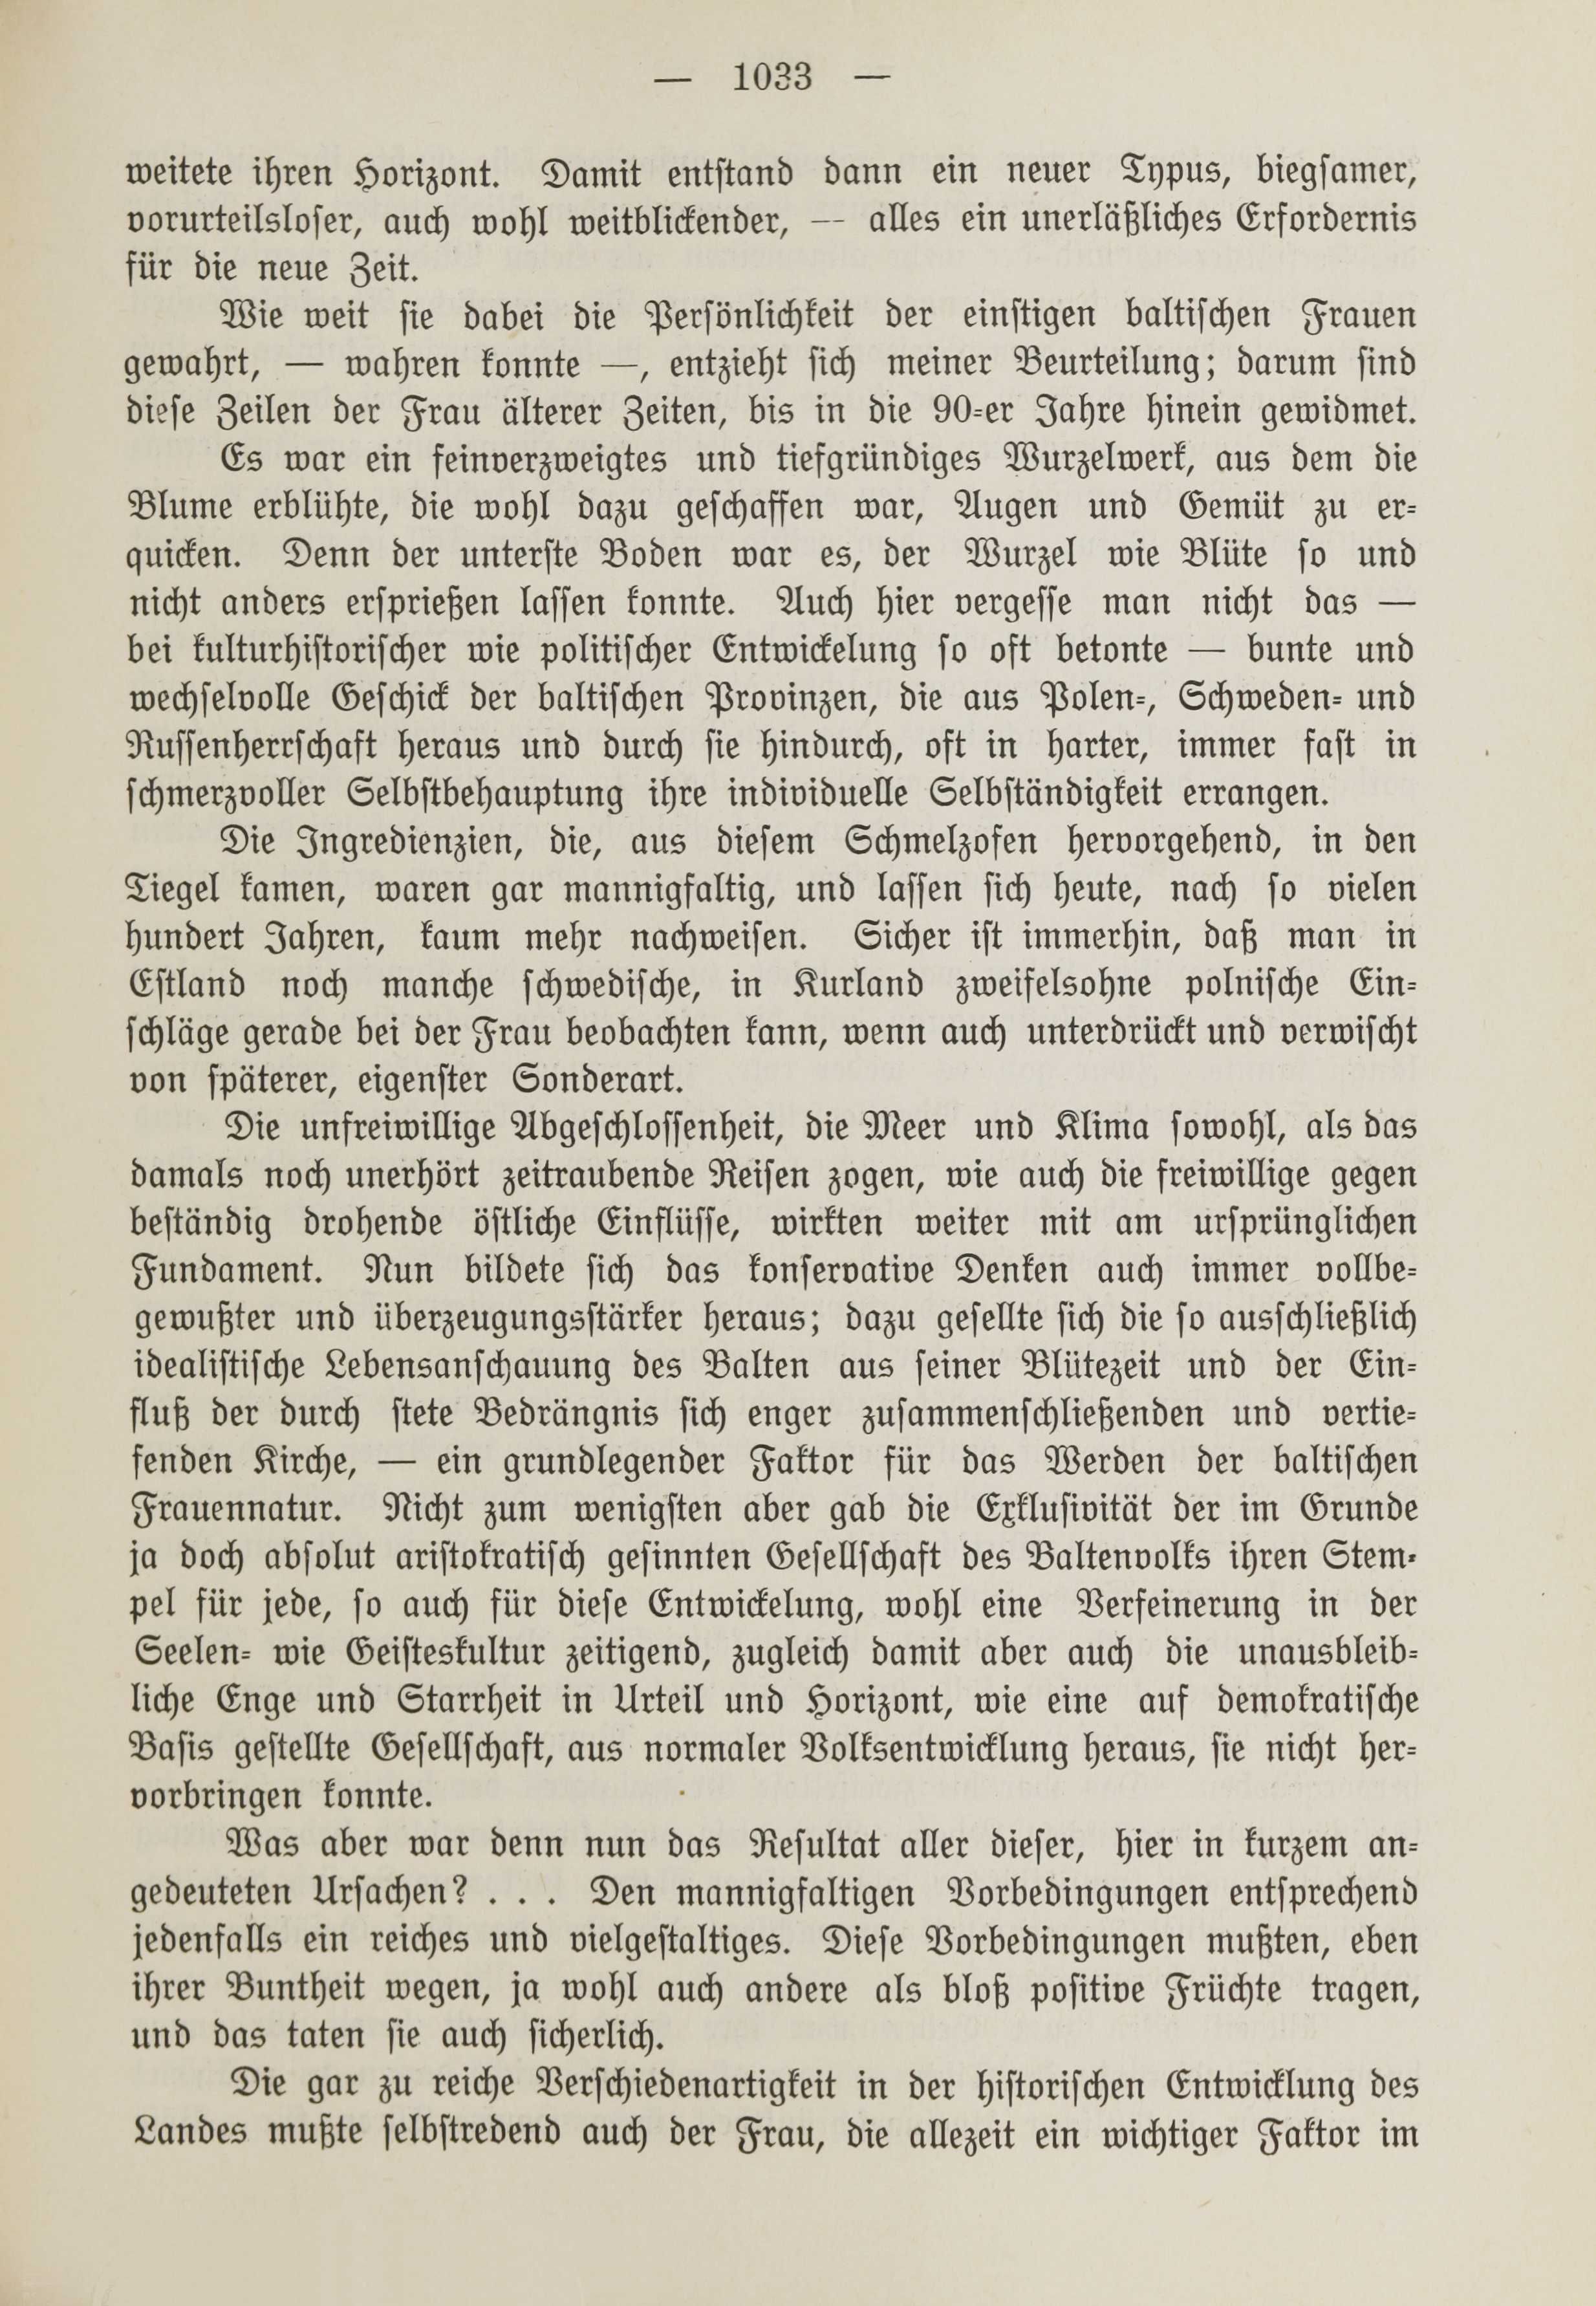 Deutsche Monatsschrift für Russland [1] (1912) | 1041. (1033) Haupttext